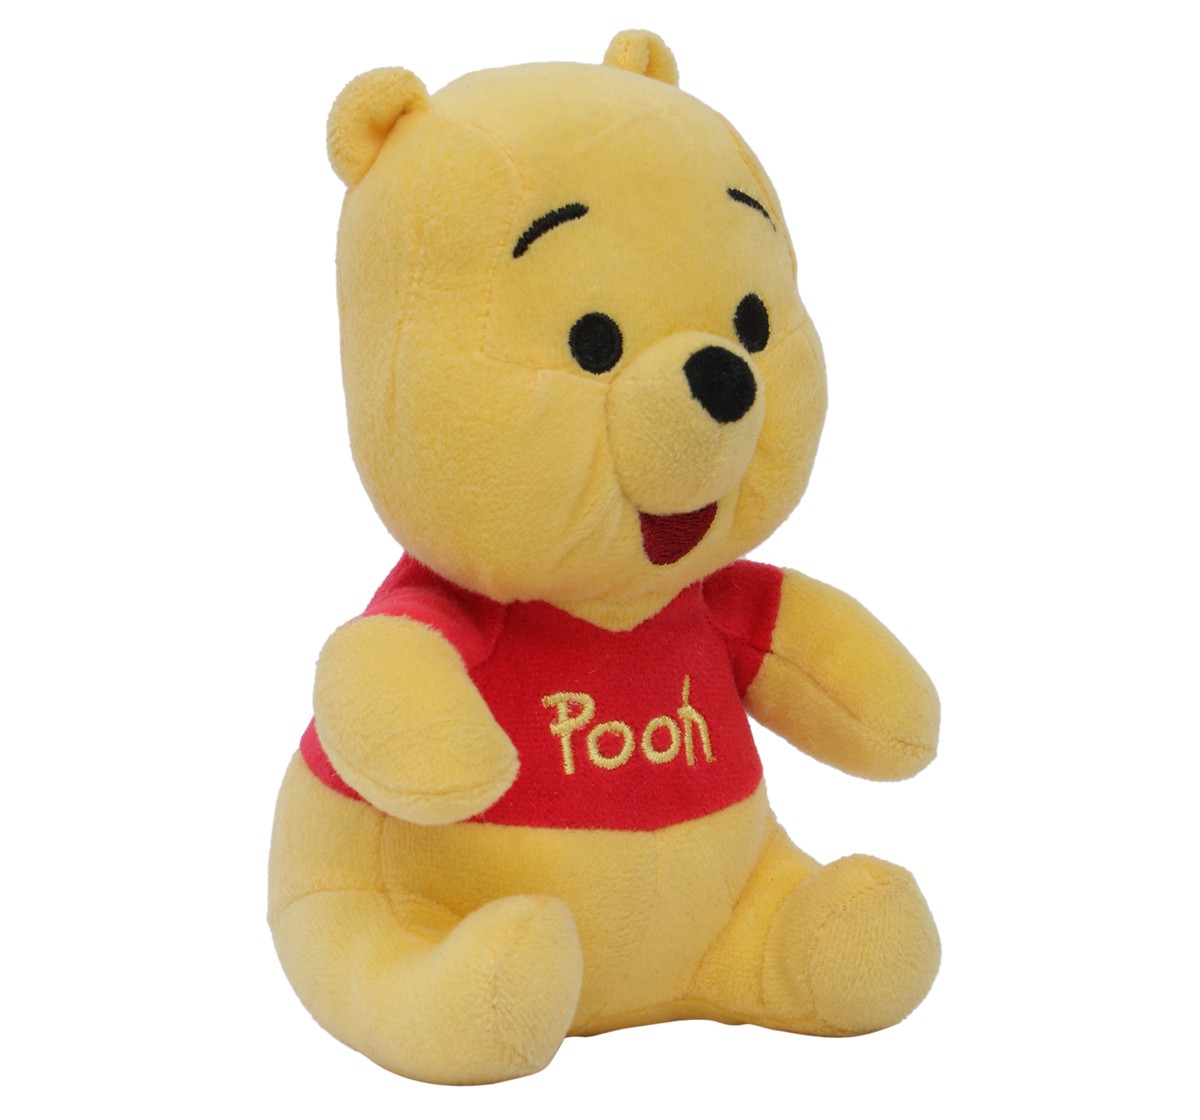 Disney Classic Winnie The Pooh Plush Toy 6 inch Multicolour 3Y+